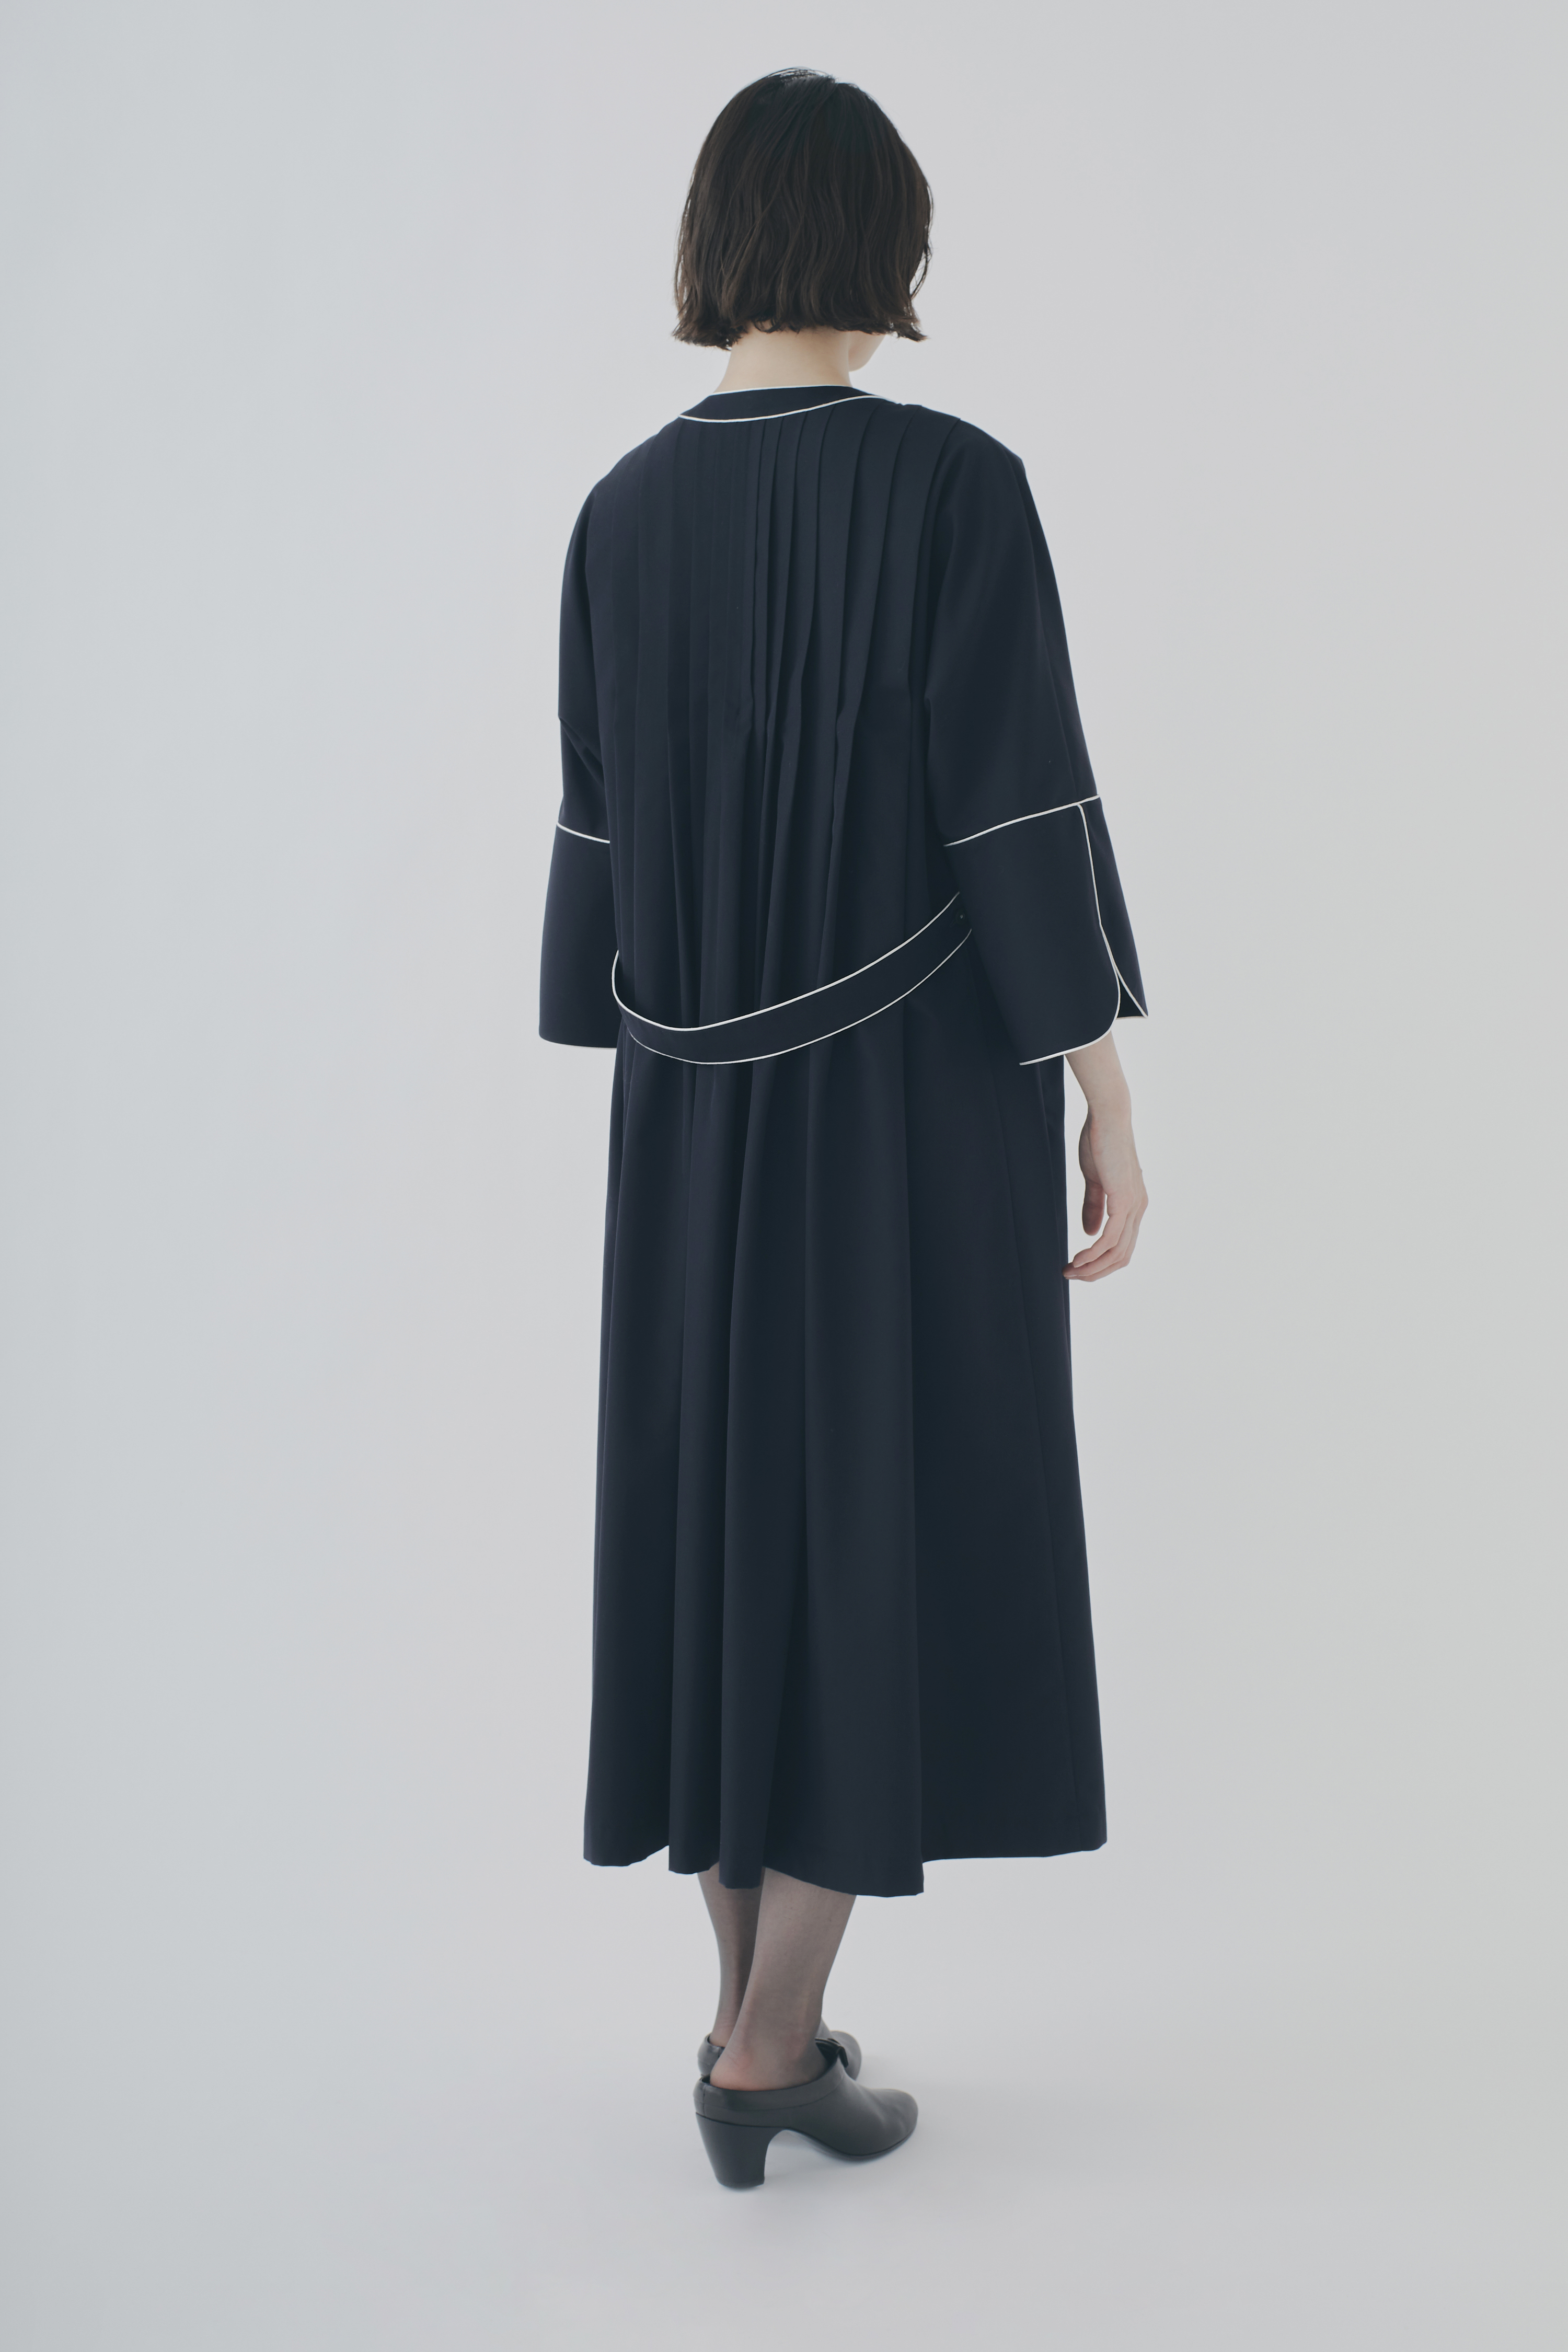 新しいスタイル ミナペルホネン forestparade ドレス 40 ワンピース 